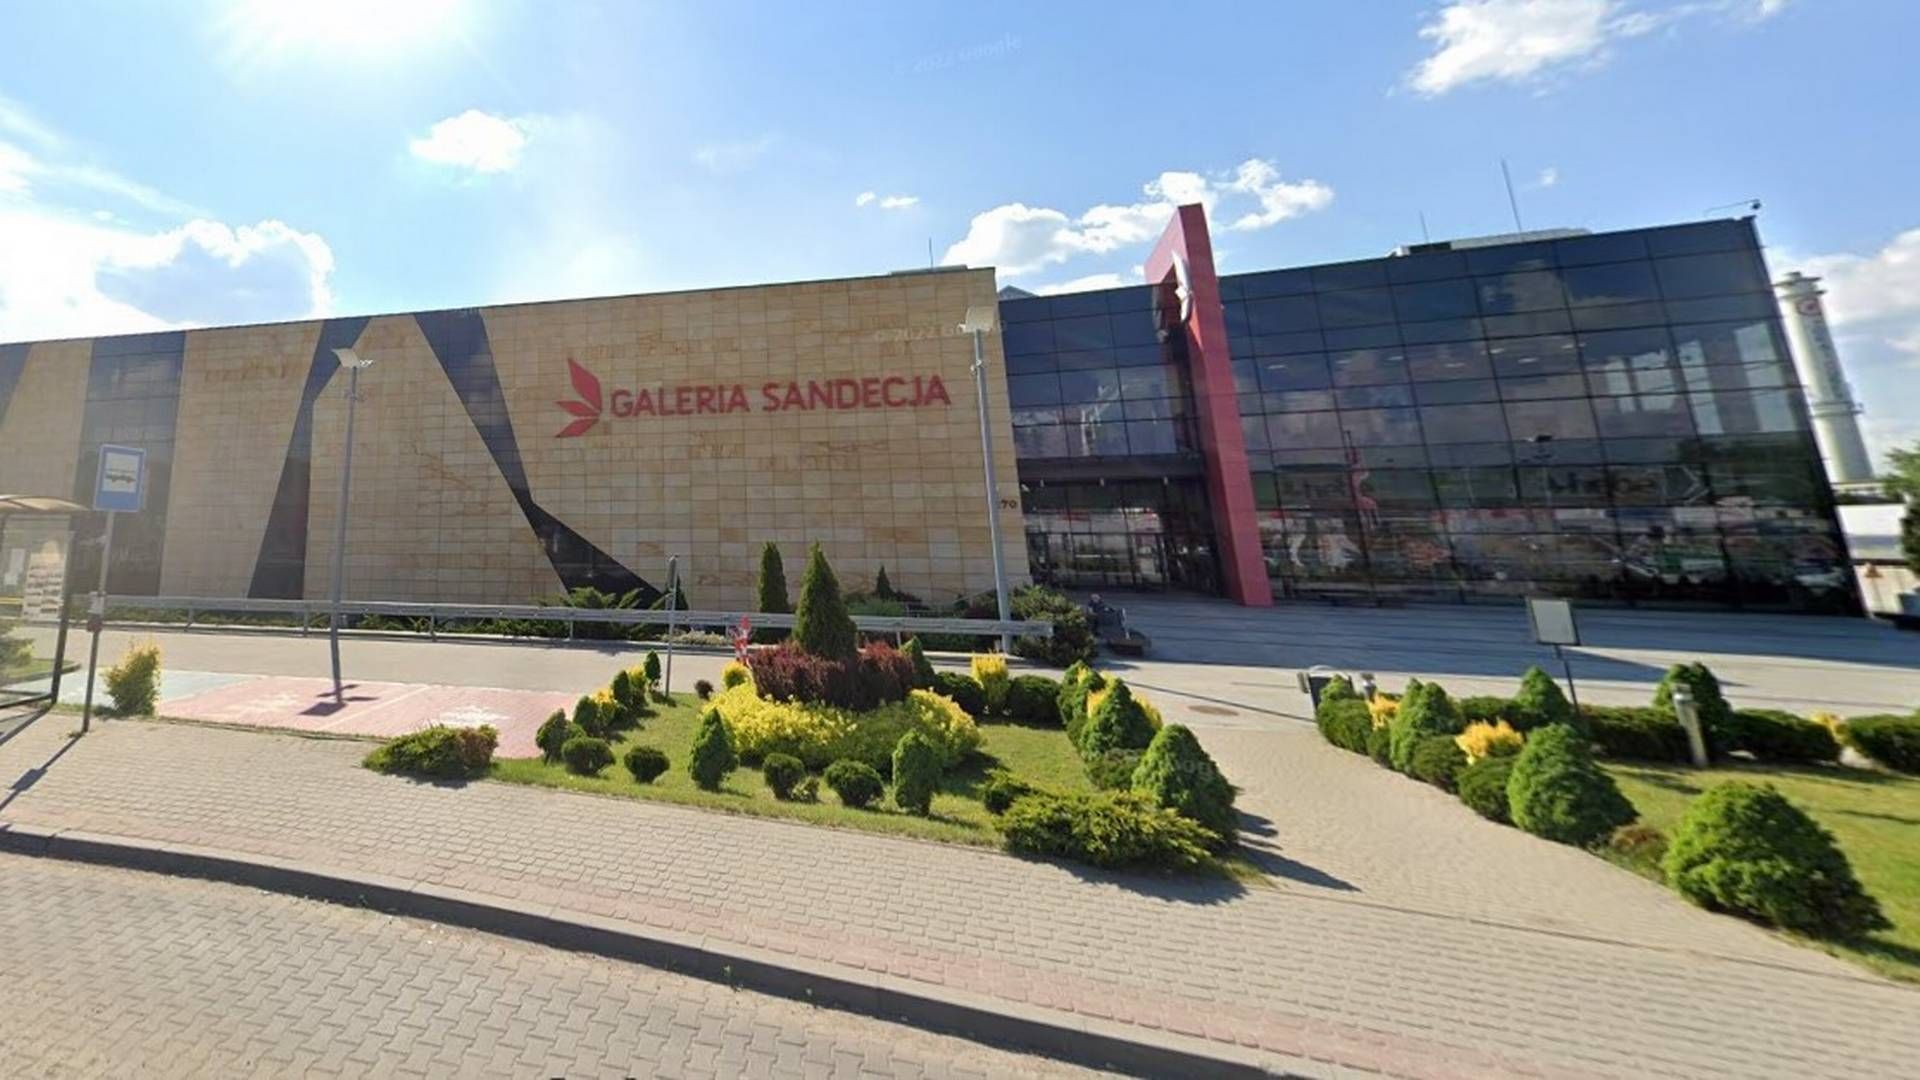 Shoppingcentret Galeria Sandecja ligger i det sydlige Polen. | Foto: Google Map